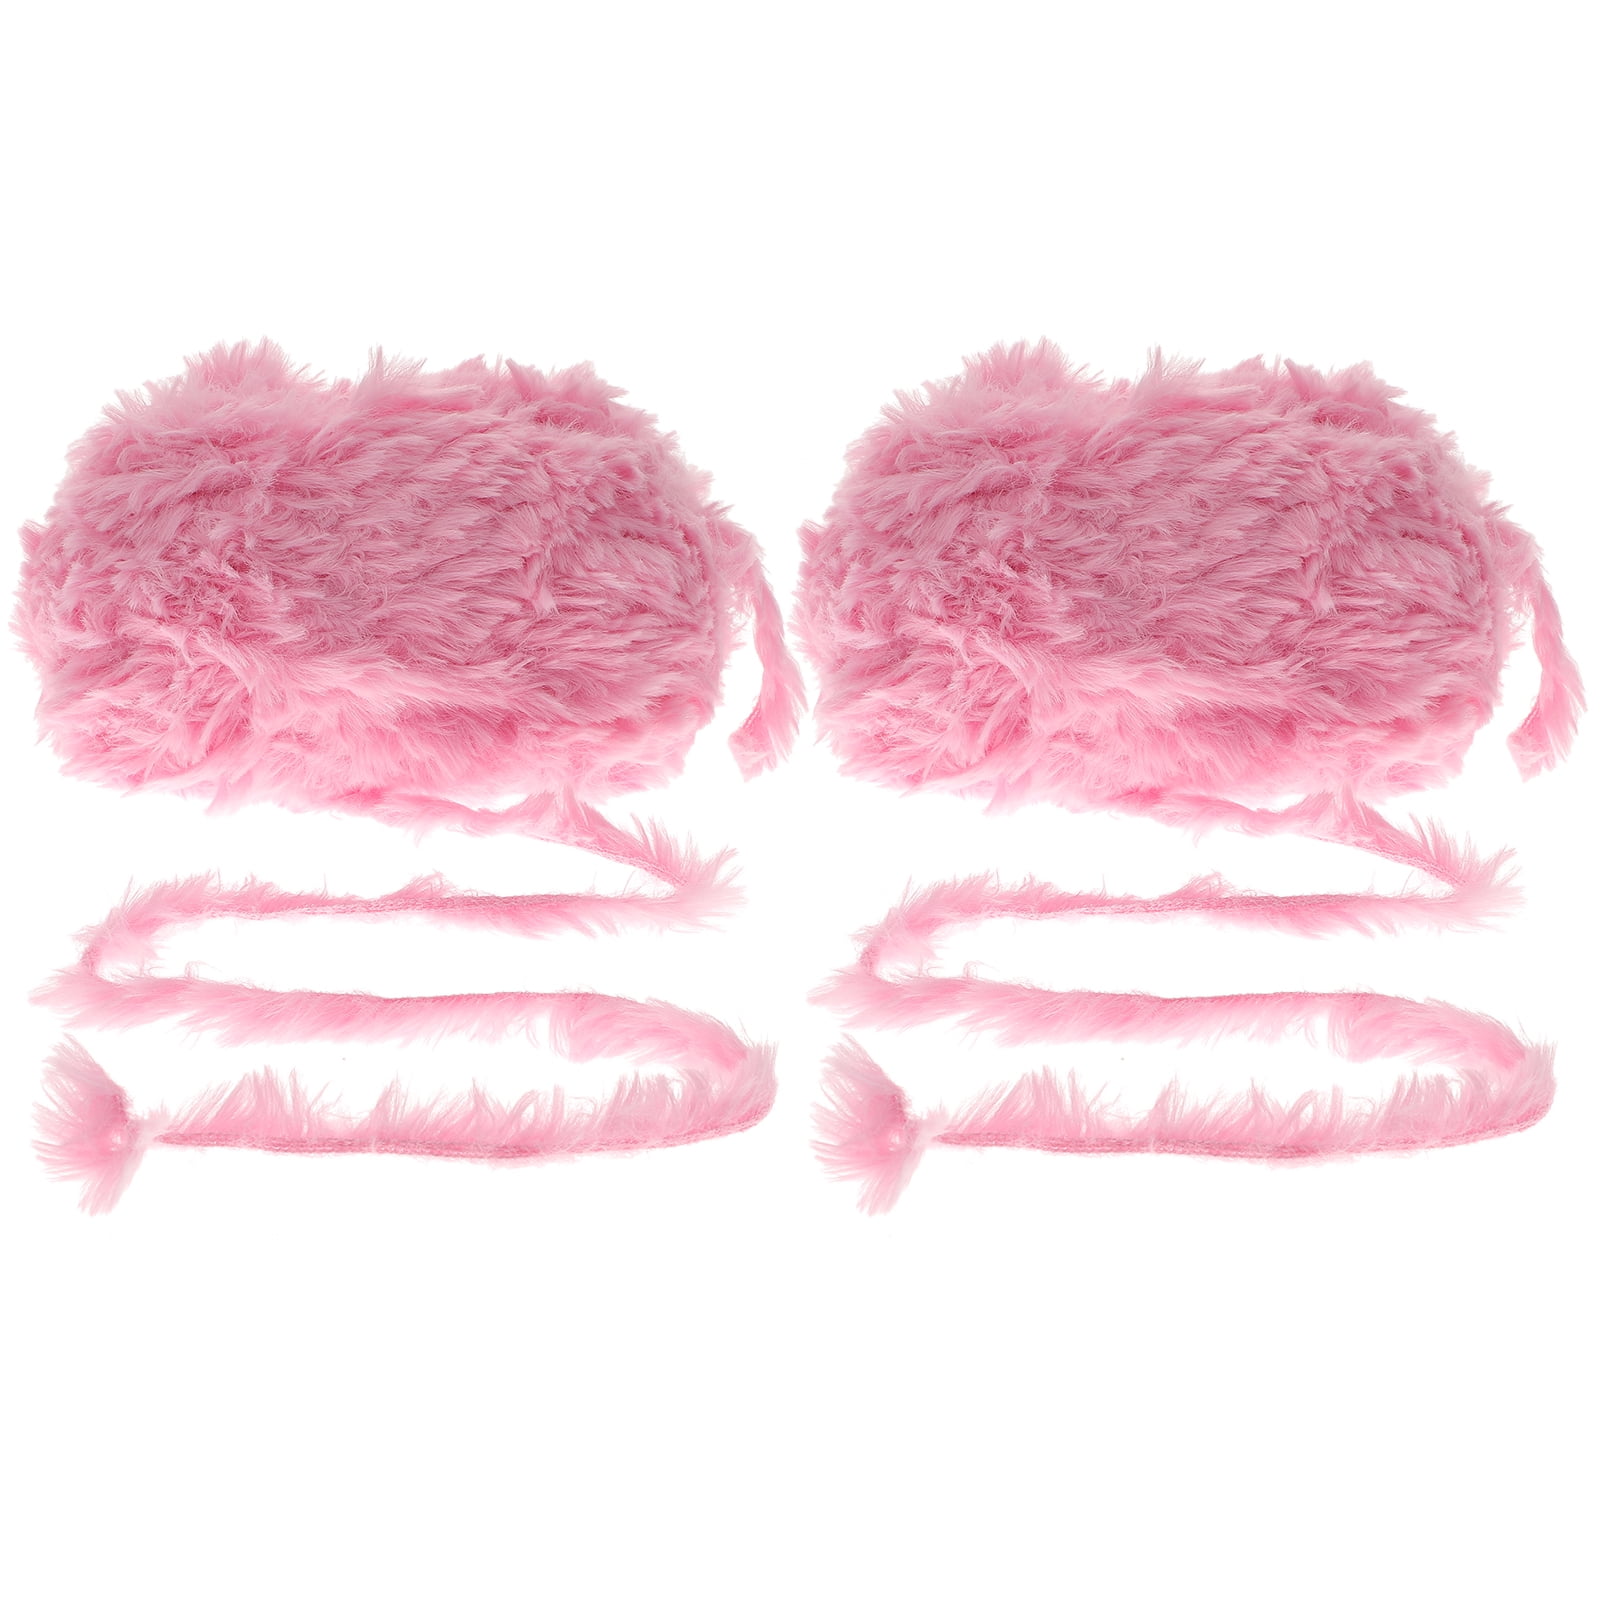 Furry Yarn Warm Coral Fleece Fur Yarn Fluffy Fuzzy Yarn Plush Yarn Super  Soft Warm Yarn Eyelash Yarn for Scarves Sweater Shawl Hats Rose Red 400g